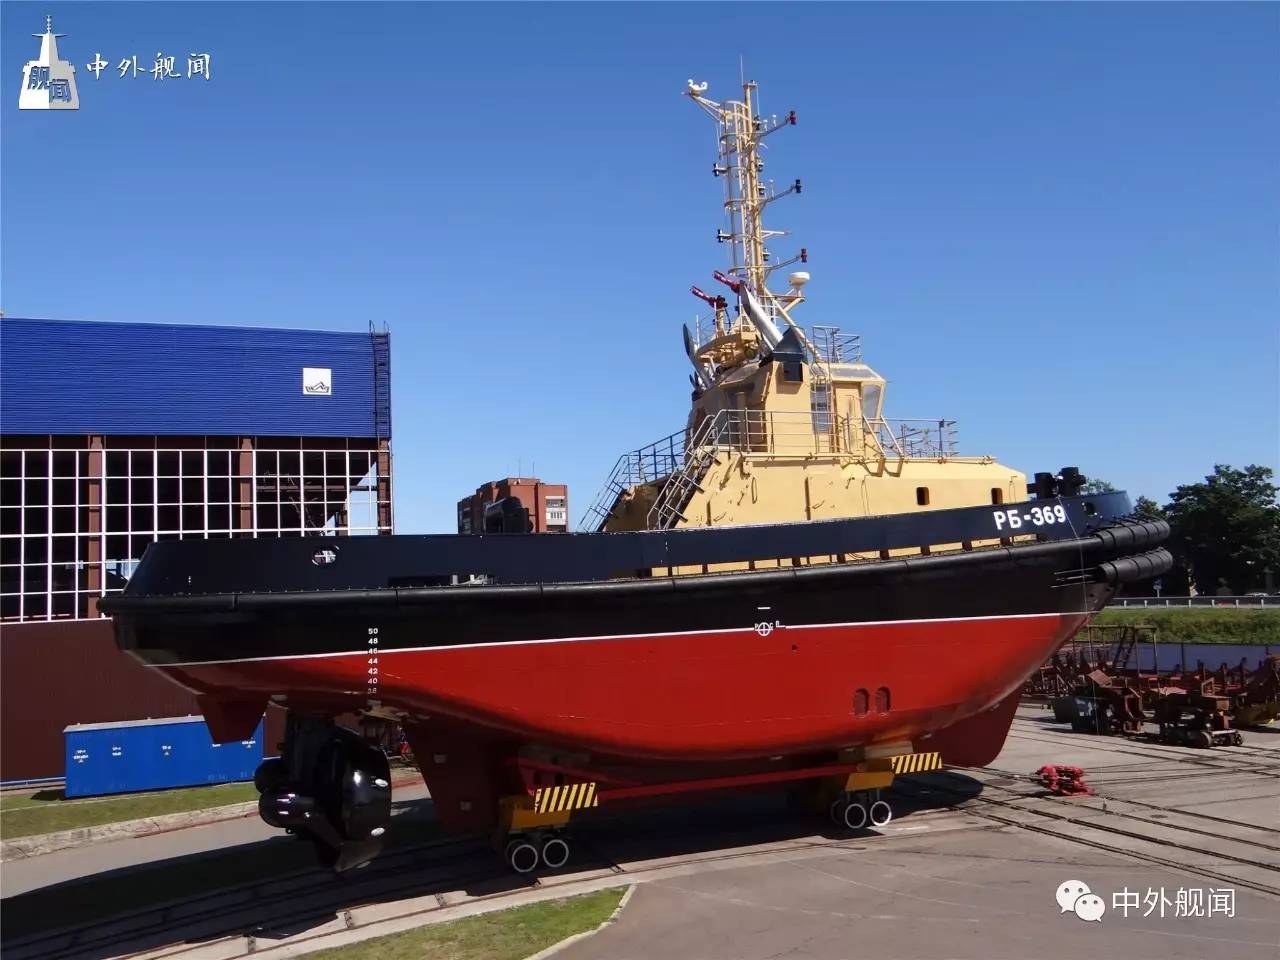 【今日舰闻】俄罗斯海军16609型拖船 РБ-369 在佩拉船厂下水